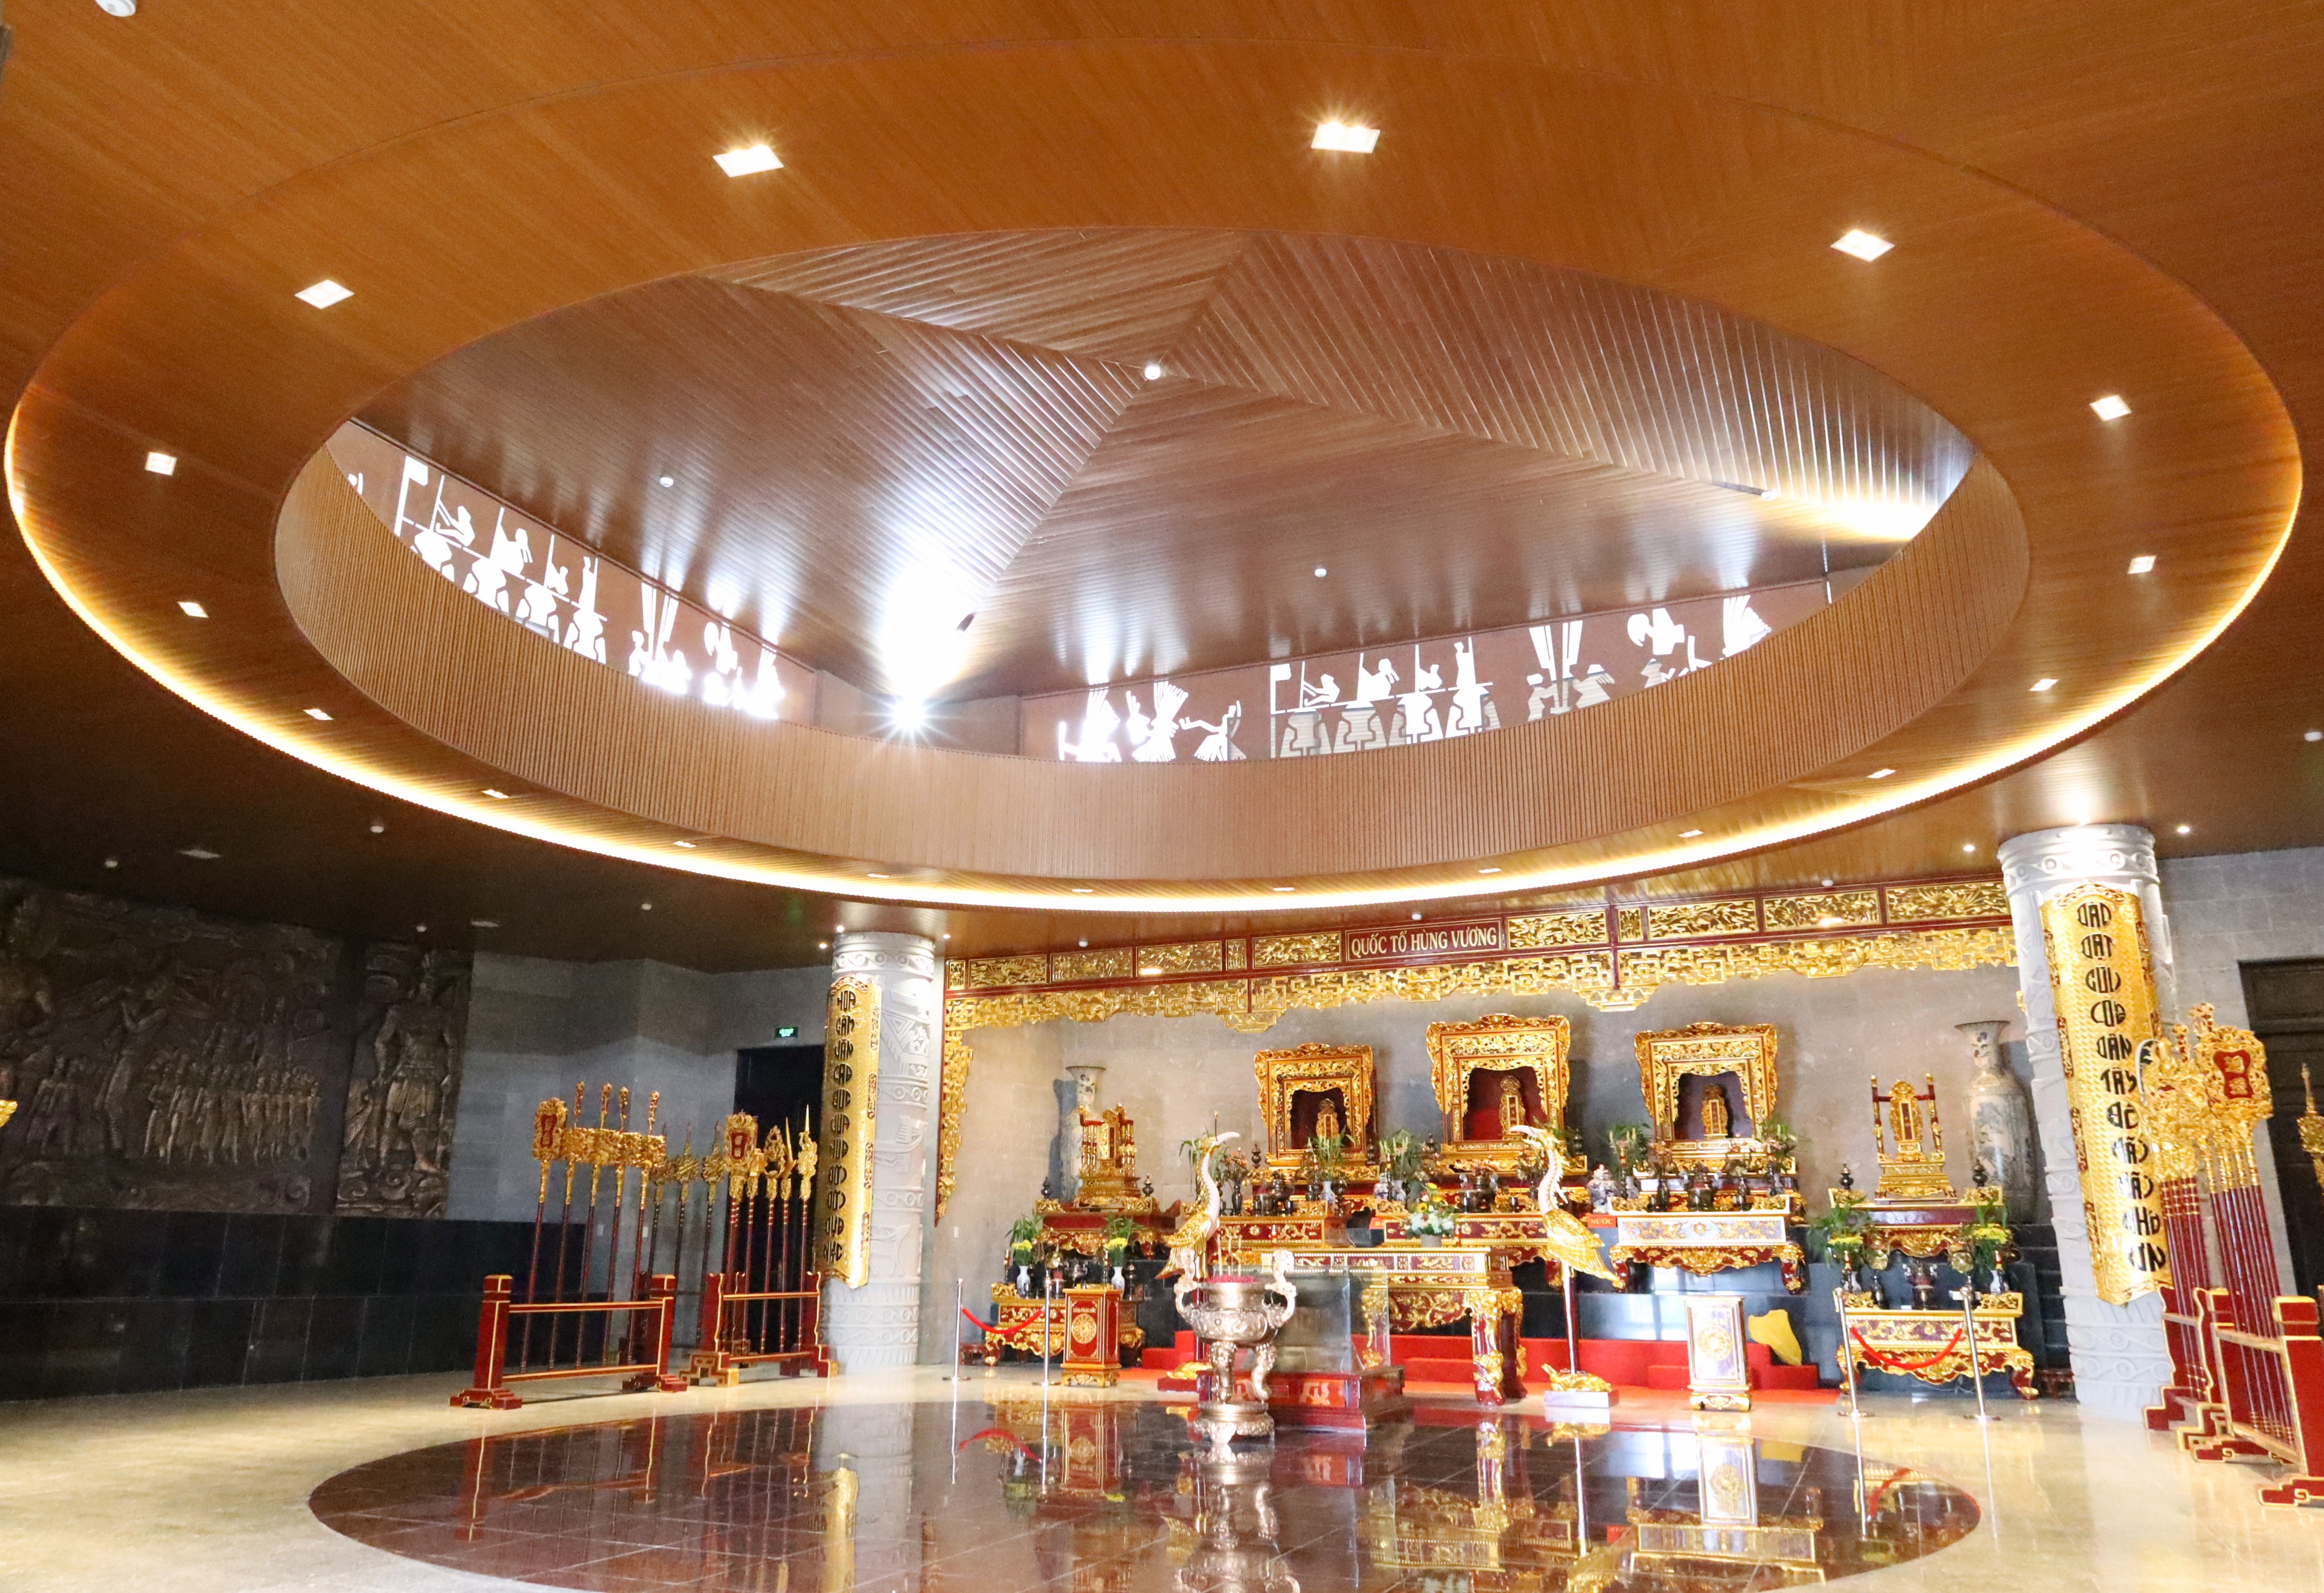 Tầng lầu là không gian thờ, được bài trí theo phong cách truyền thống của dân tộc Việt.